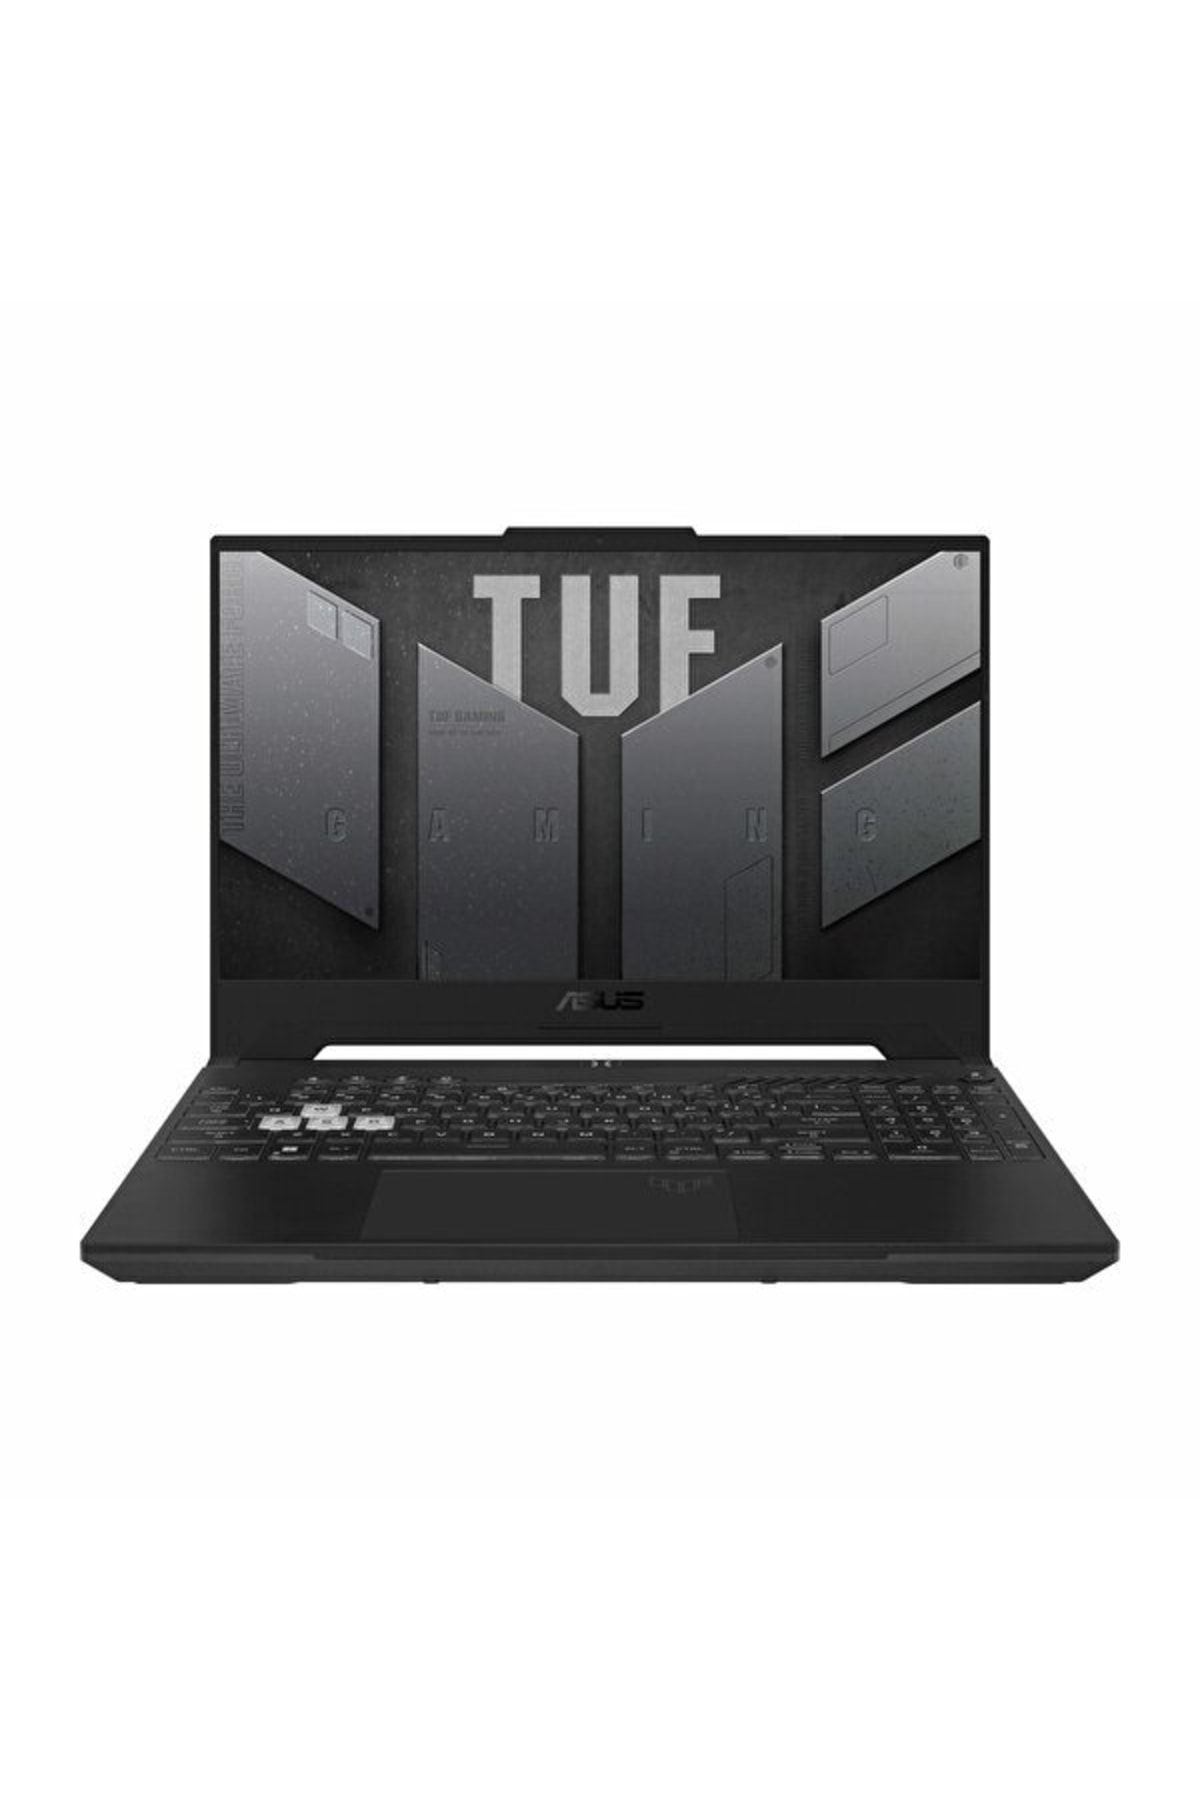 ASUS Tuf Gaming F15 Fx507zc4-hn107w Intel Core I7-12700h 16gb Ddr4 512gb M2 Ssd Nvidia Geforce Rtx30